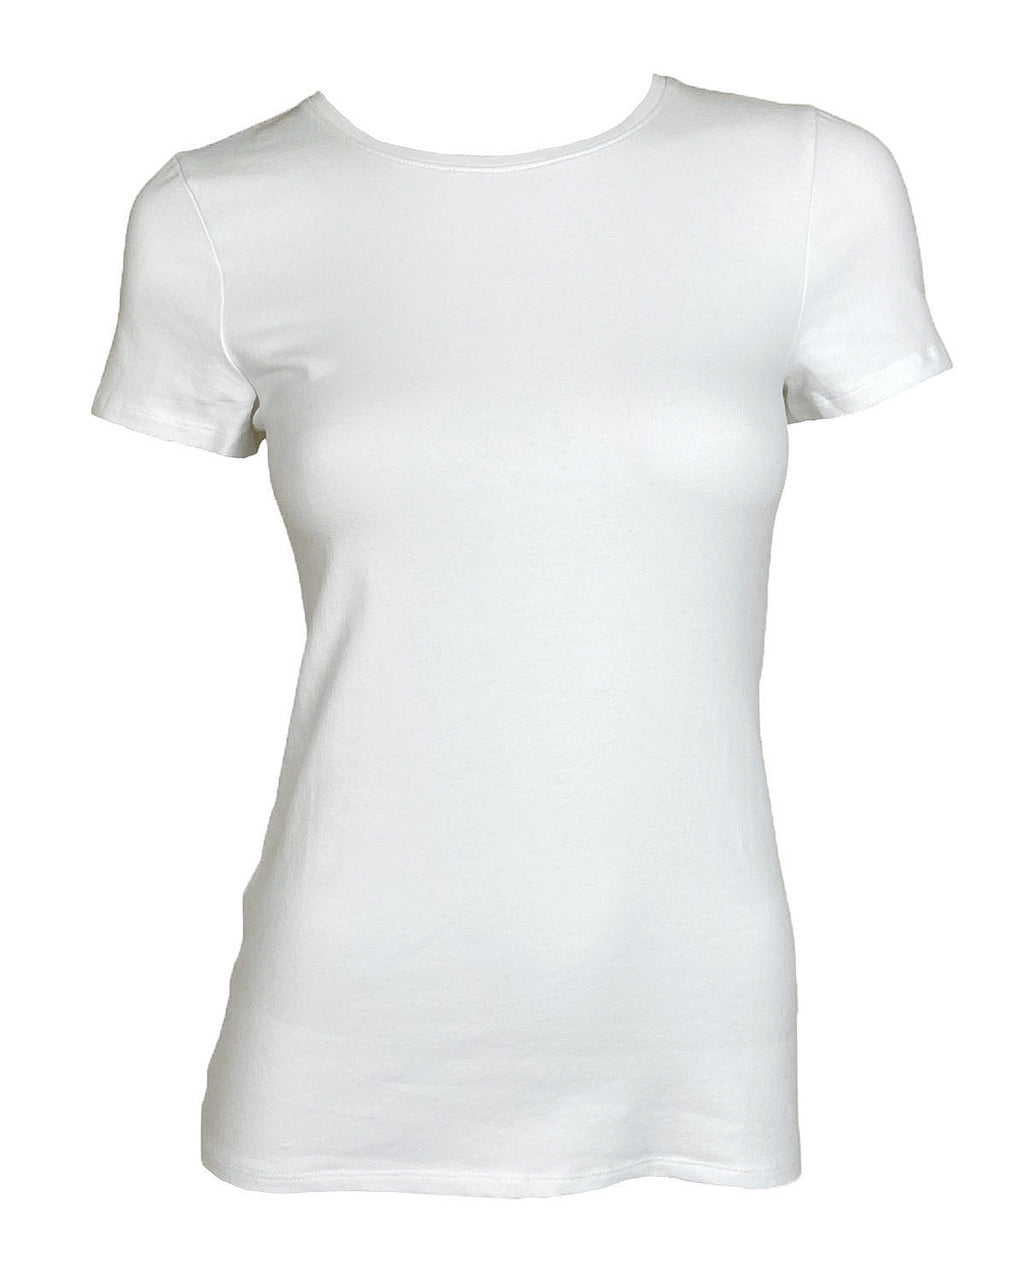 T-shirt blanc : 28 modèles parfaitement coupés dans lesquels investir